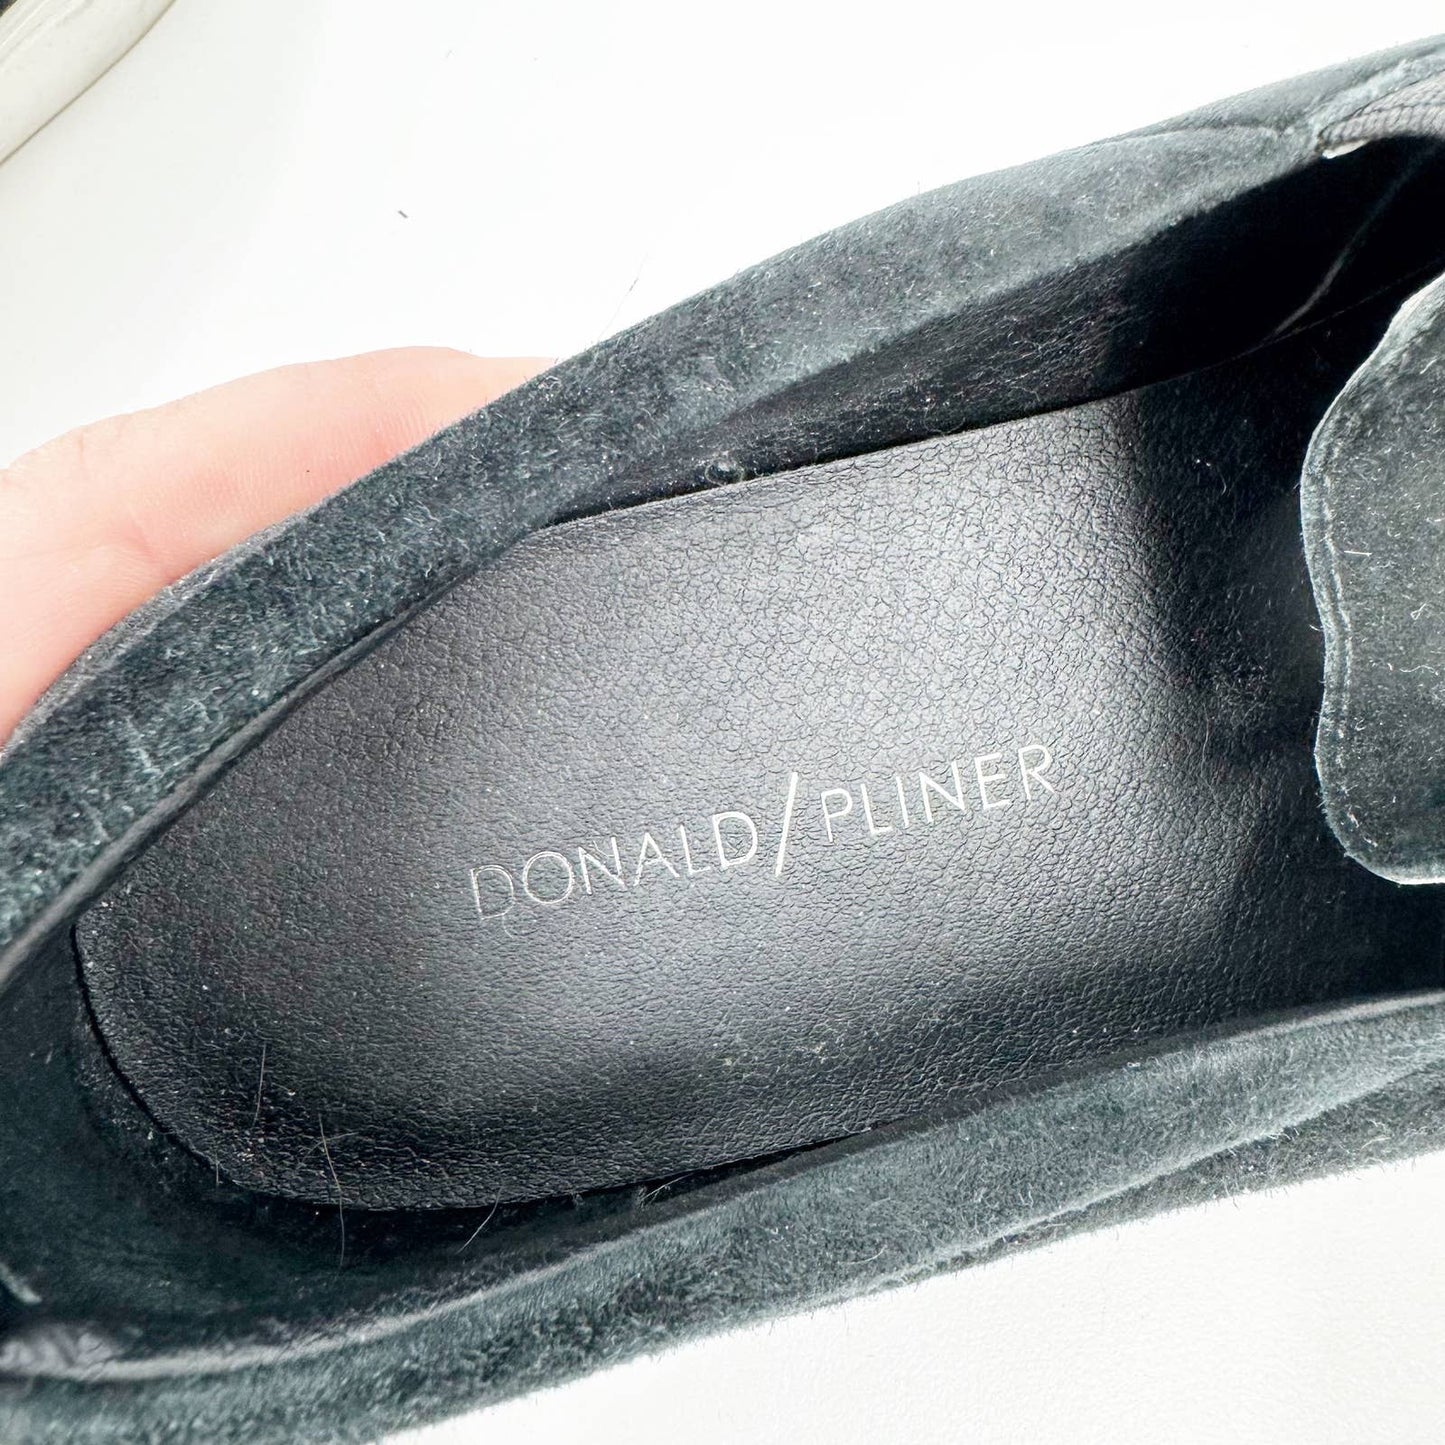 Donald Pliner Sallie Tassel Suede Slip On Sneakers Shoes Black 8.5